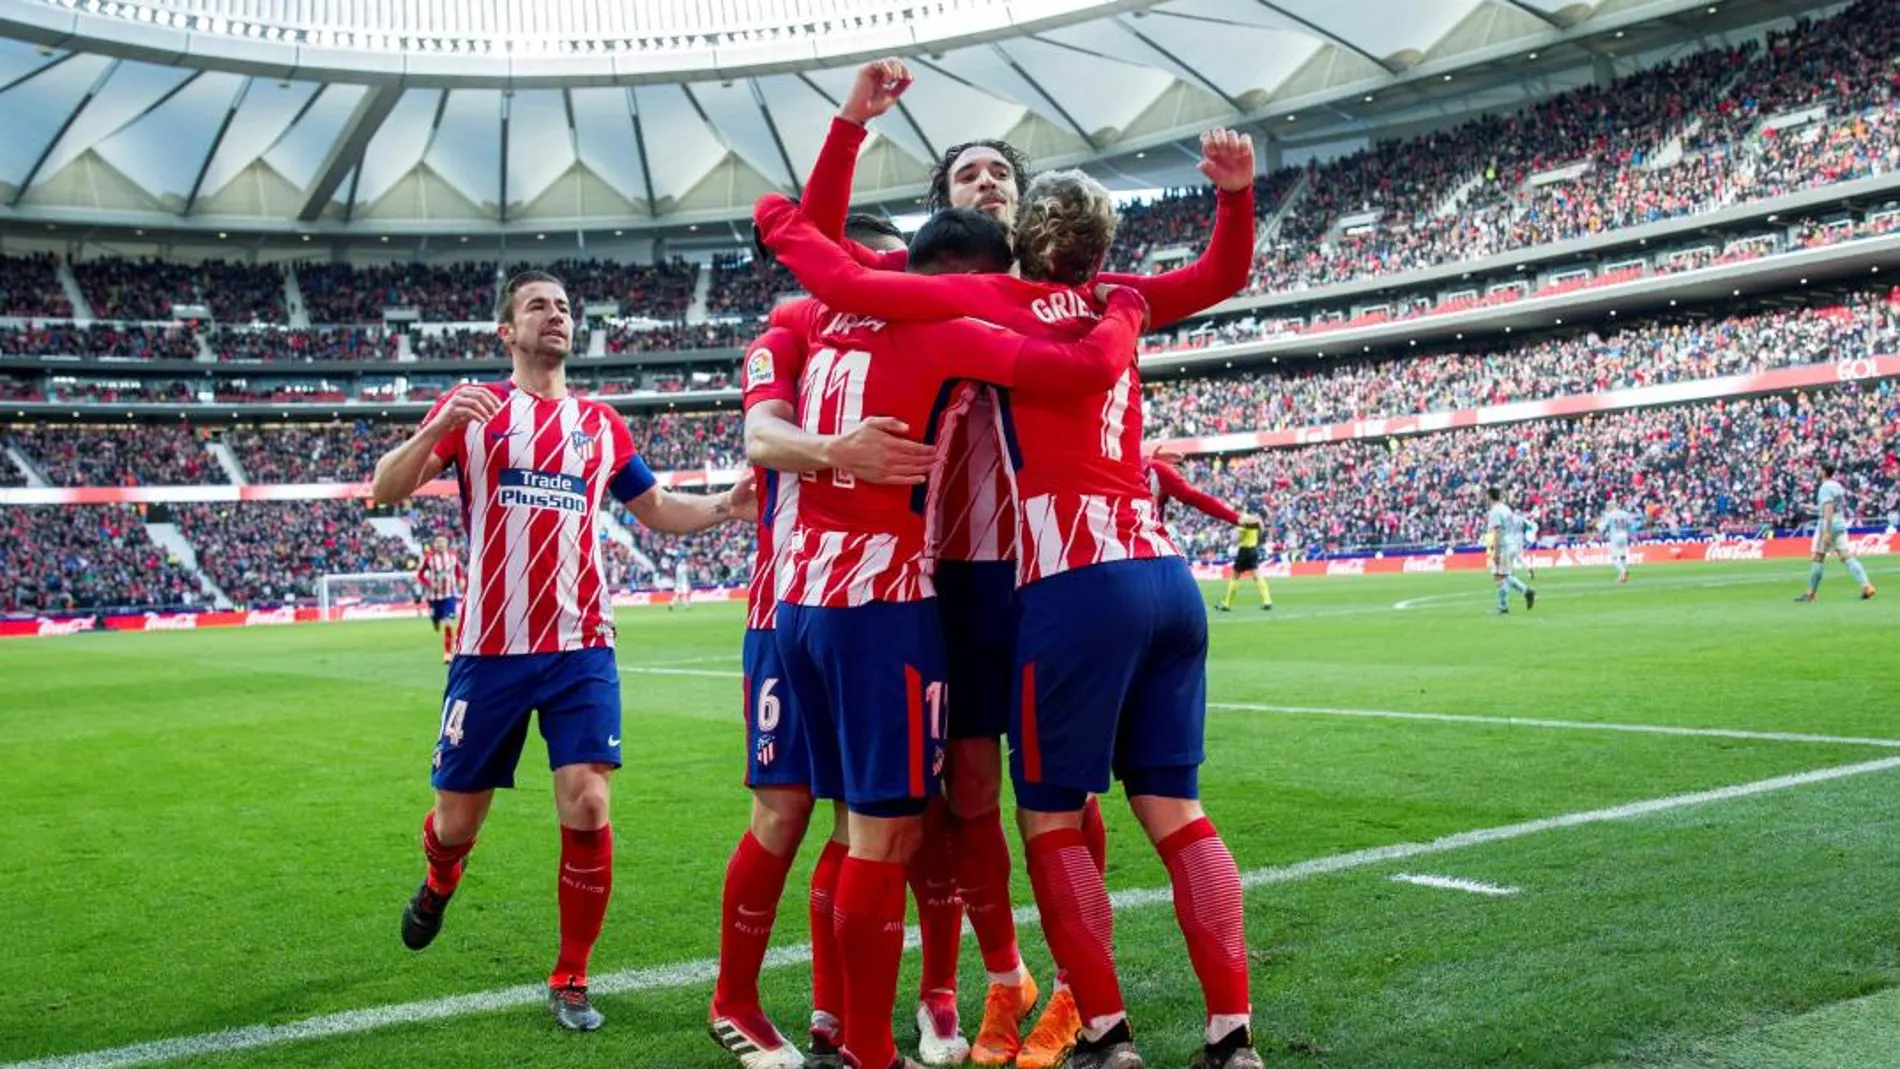 Los jugadores del Atlético de Madrid celebran el tercer gol marcado contra el Celta de Vigo